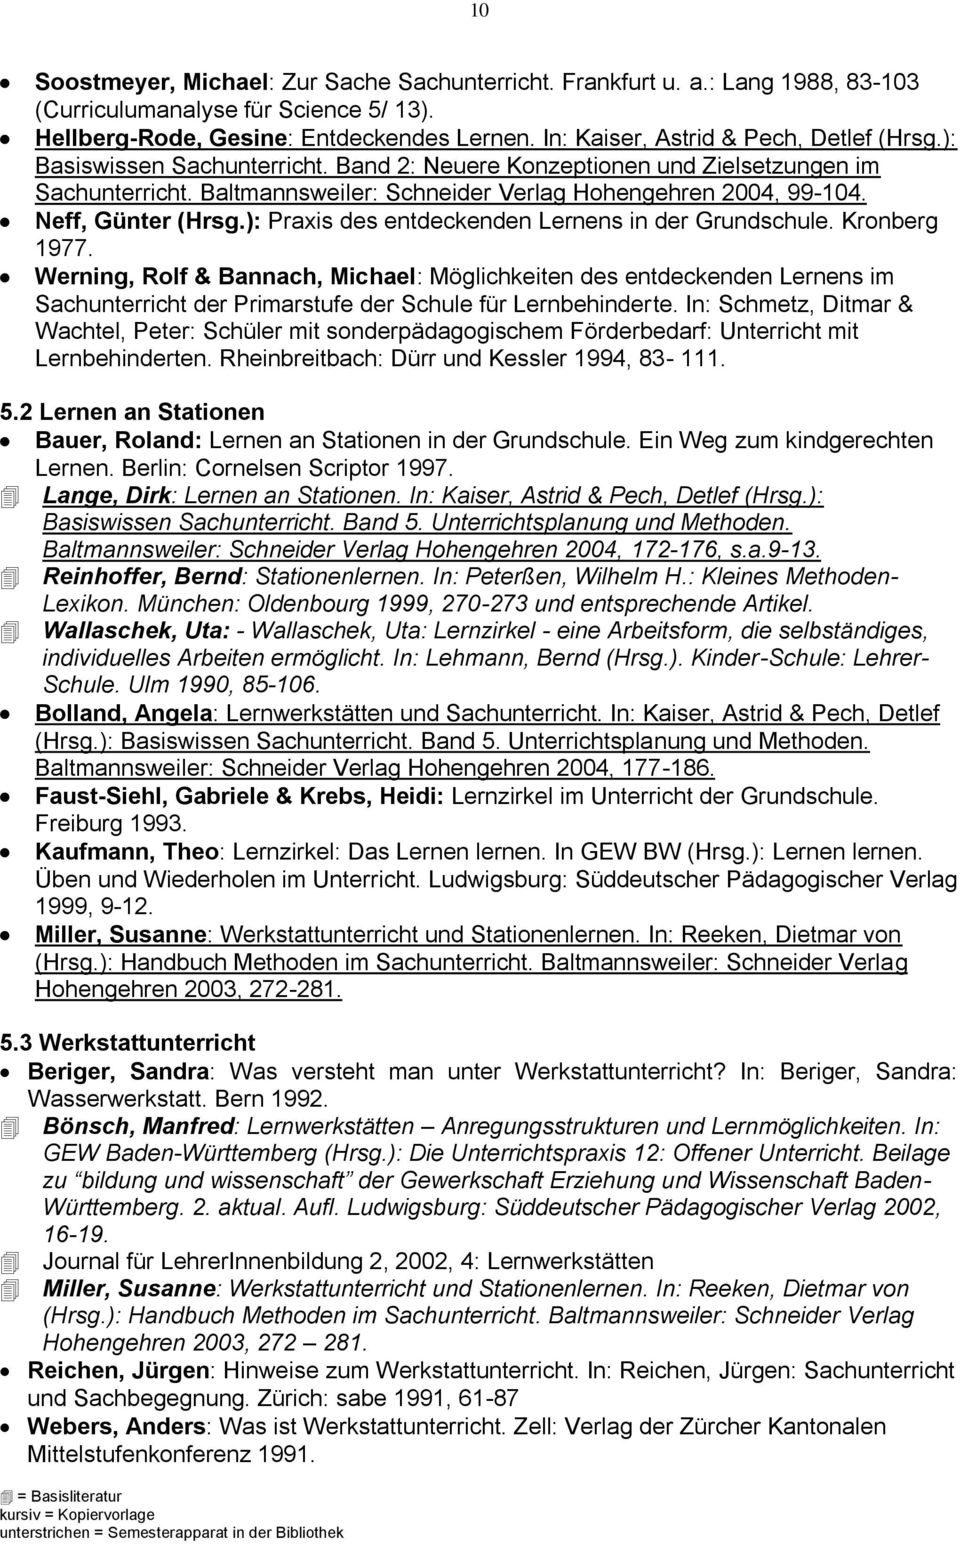 Neff, Günter (Hrsg.): Praxis des entdeckenden Lernens in der Grundschule. Kronberg 1977.